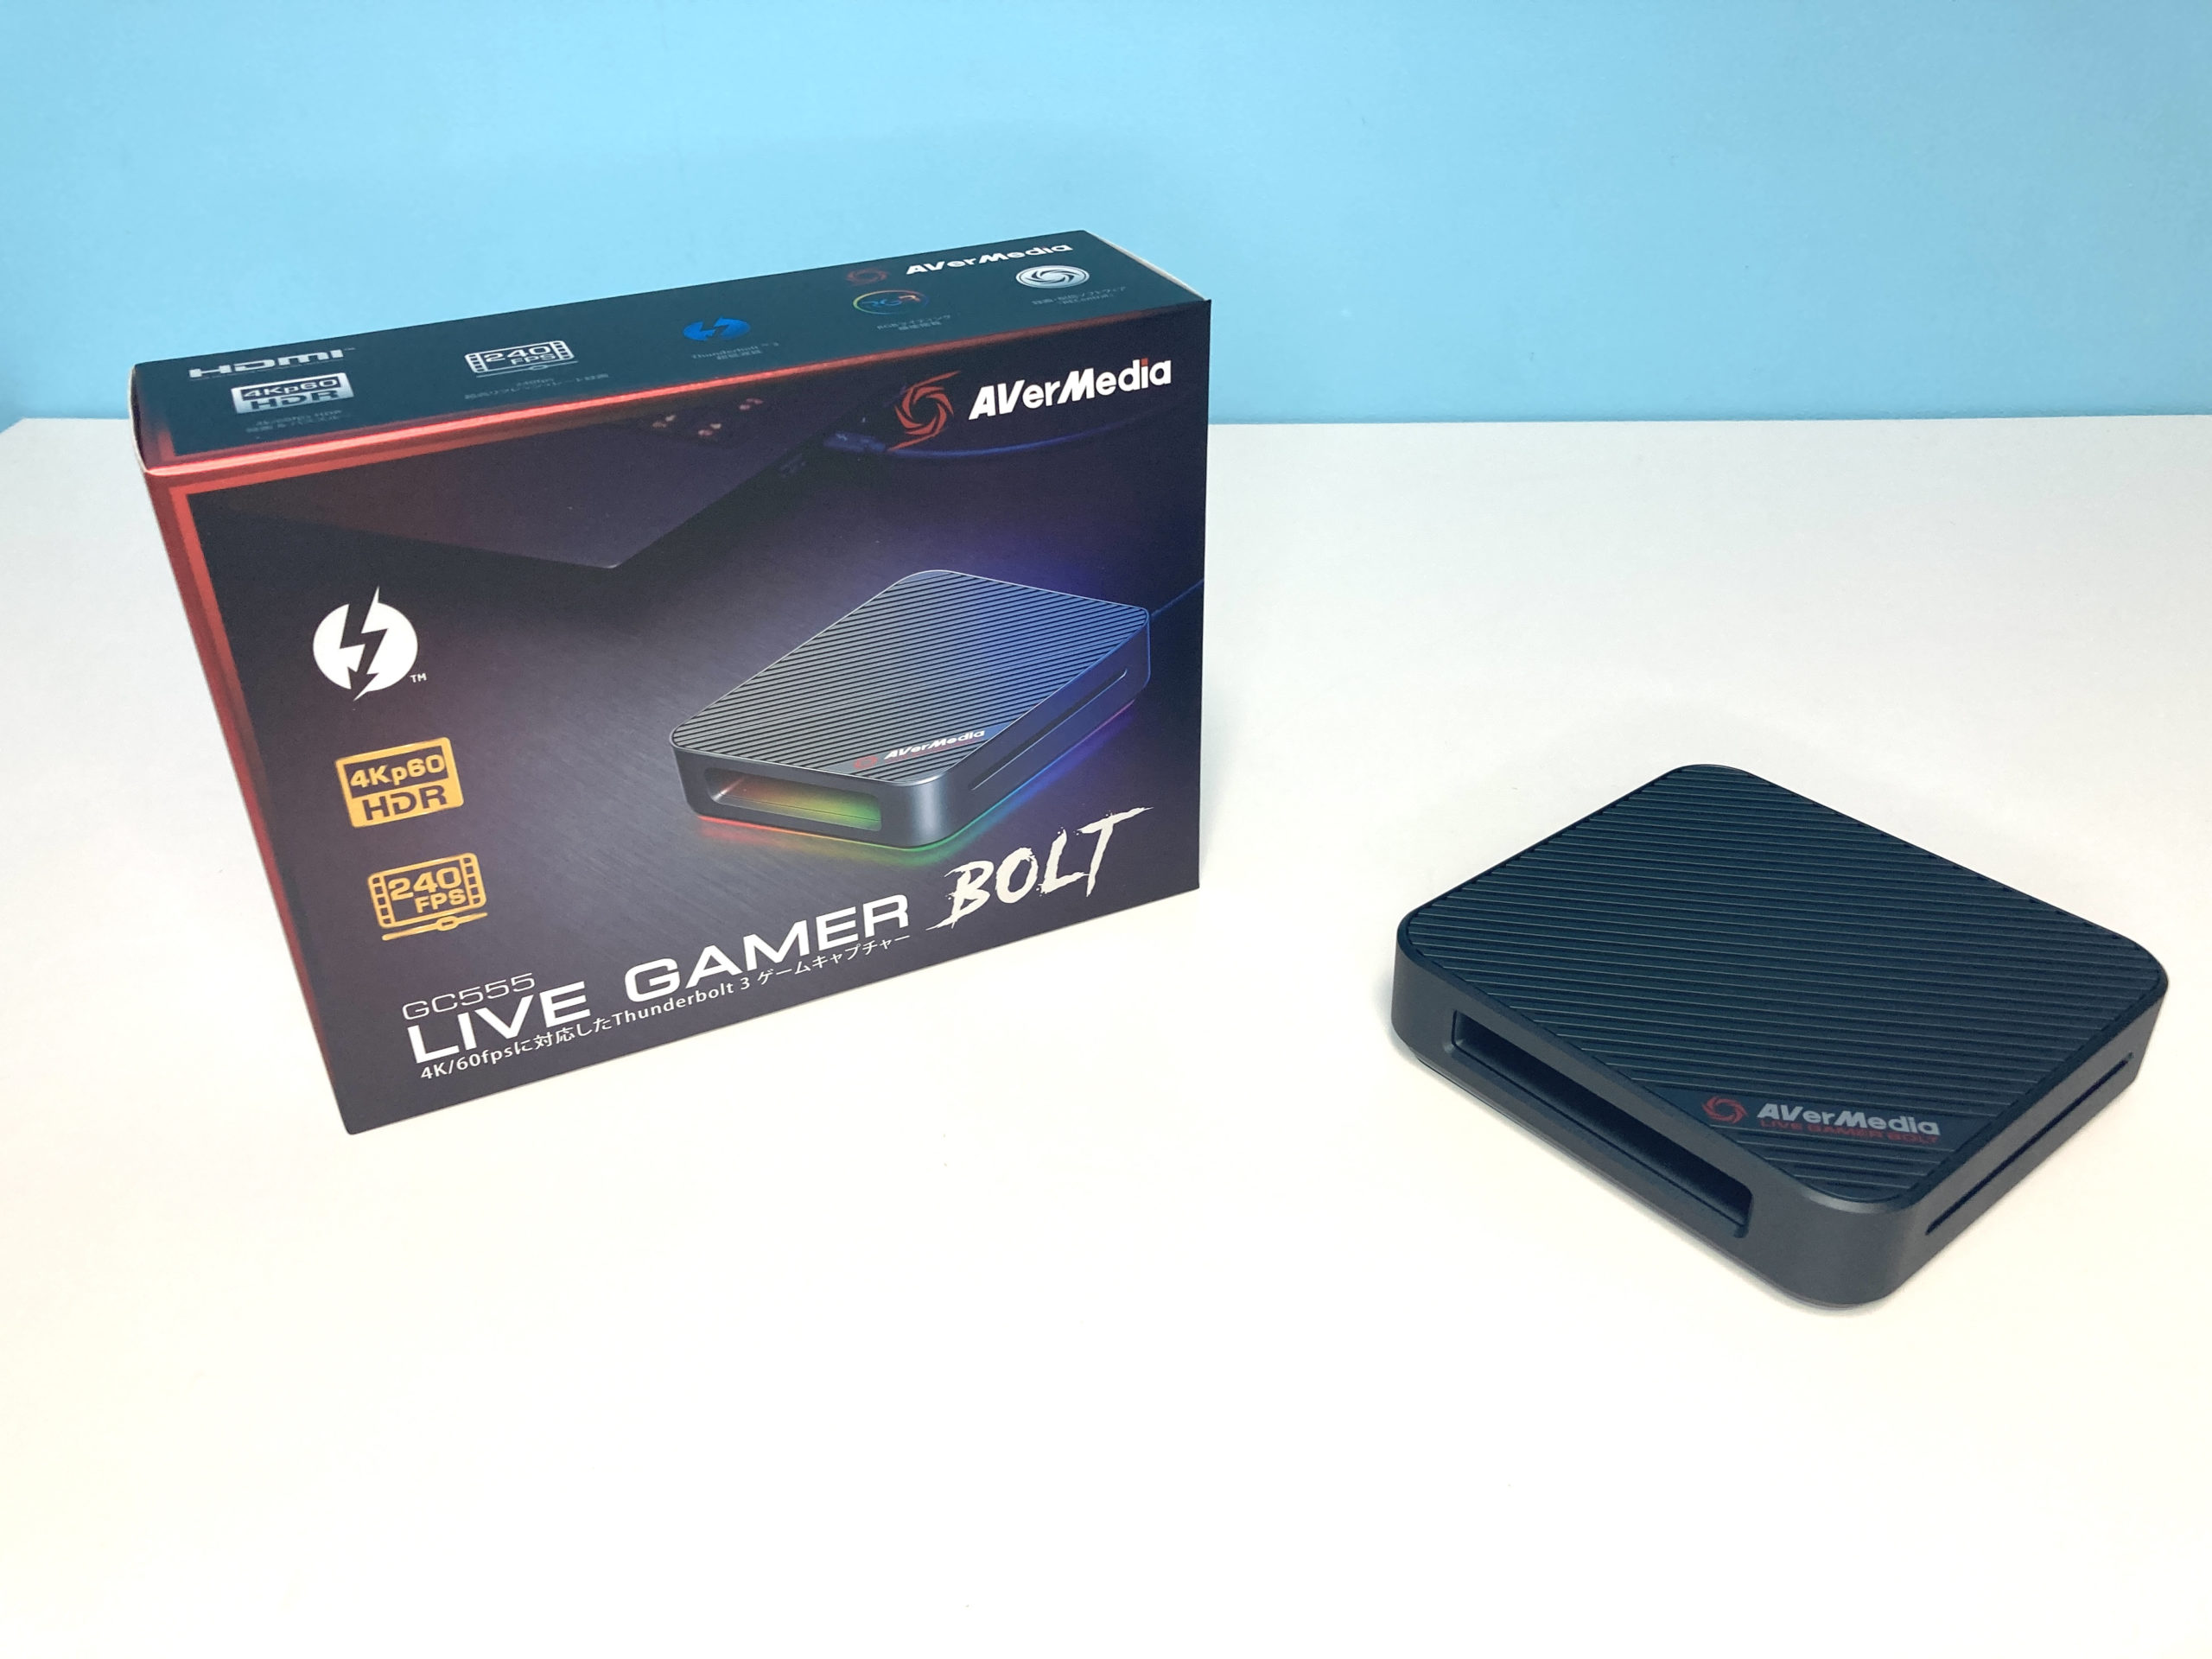 AVerMeda Live Gamer BOLT GC555 外付けゲームキャプチャー 4K HDR 60p対応 パススルー機能付 Th-